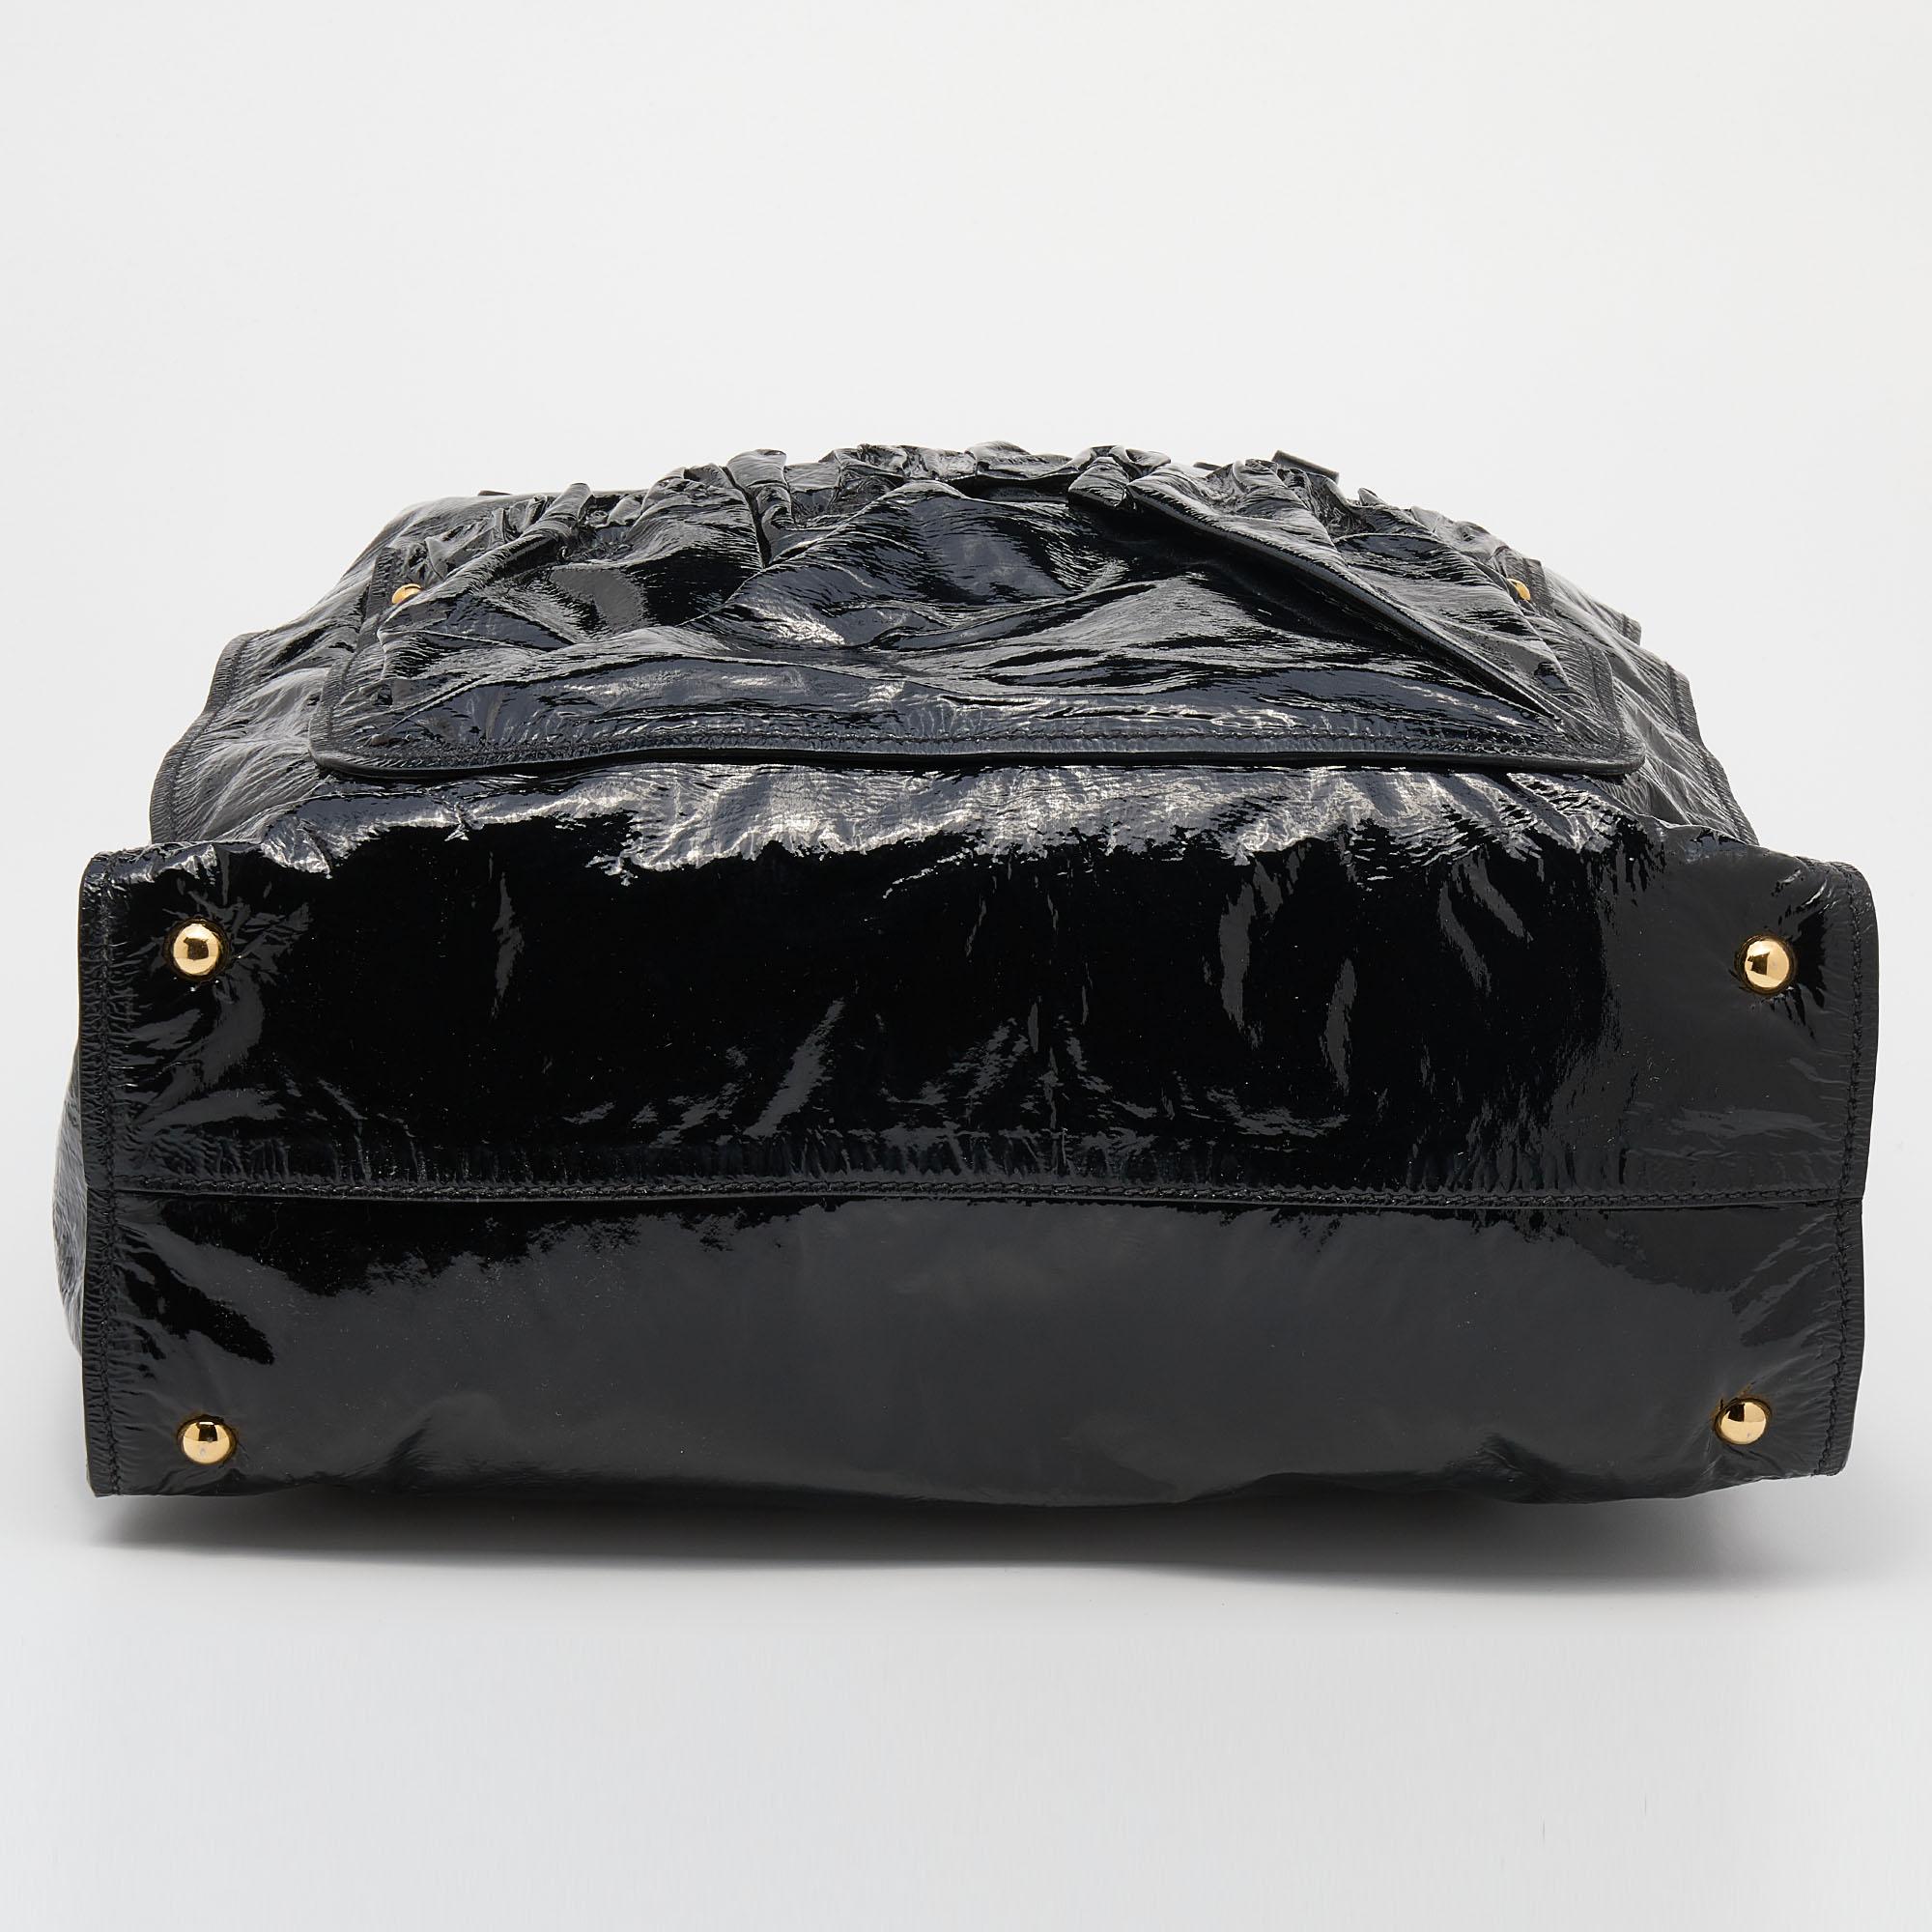 Miu Miu Black Patent Leather Tote 1